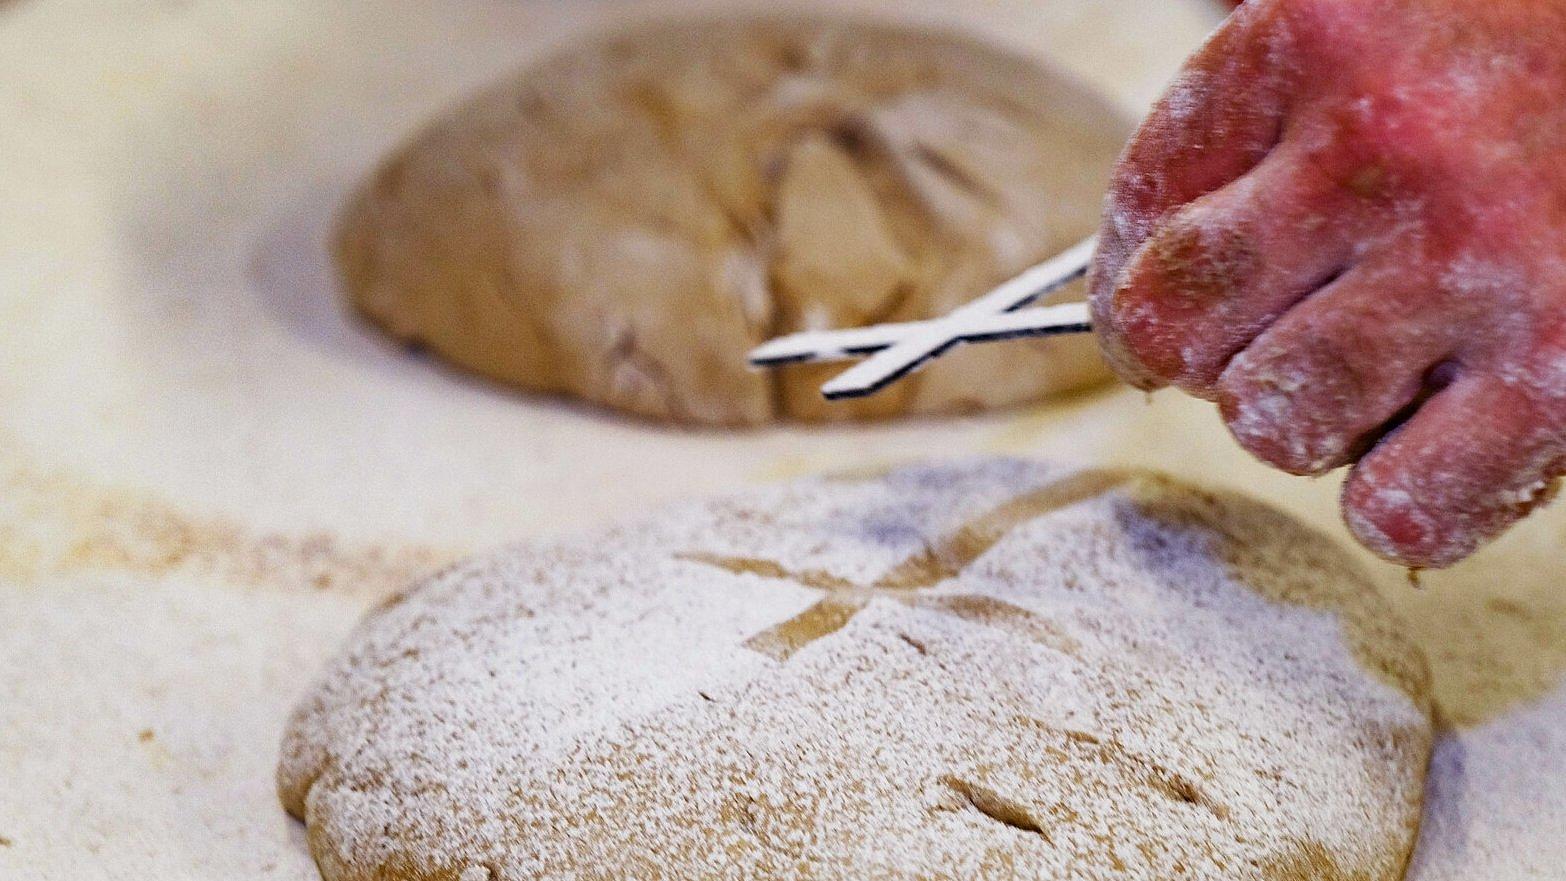 In einer Bäckerei wird Brot gebacken für die Aktion "5.000 Brote - Brot für die Welt". Im Vordergrund ein Brot und eine Hand, die ein Kreuz hält, um das Kreuz als Motiv auf das Brot zu bringen.